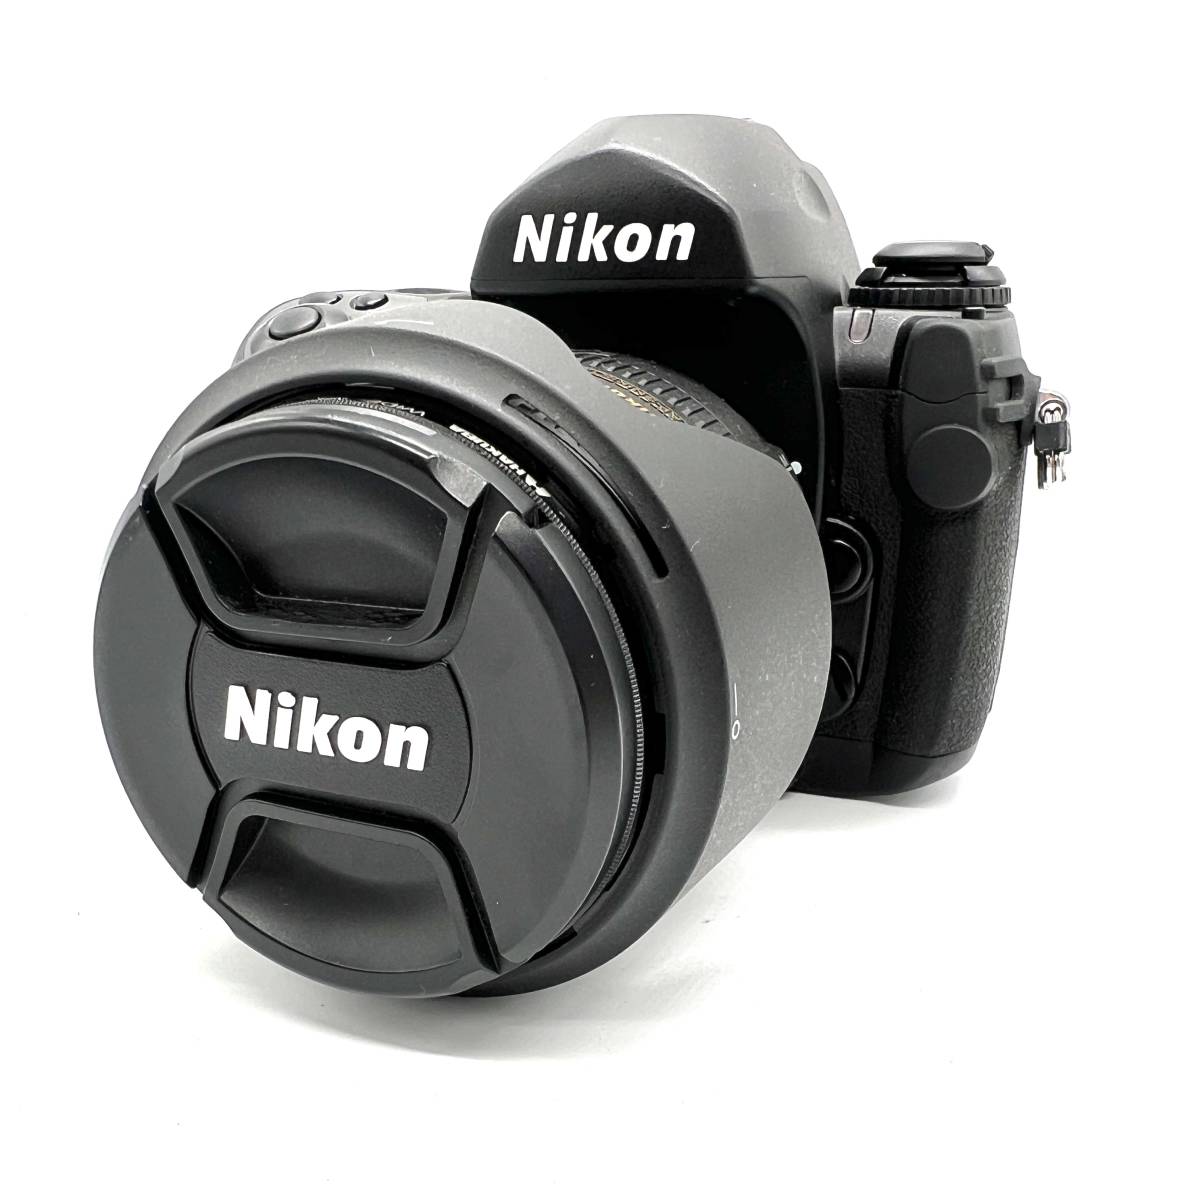 ■Nikon ニコン F6 一眼 フィルムカメラ NIKKOR 16-85mm 1:3.5-5.6G ED レンズセット